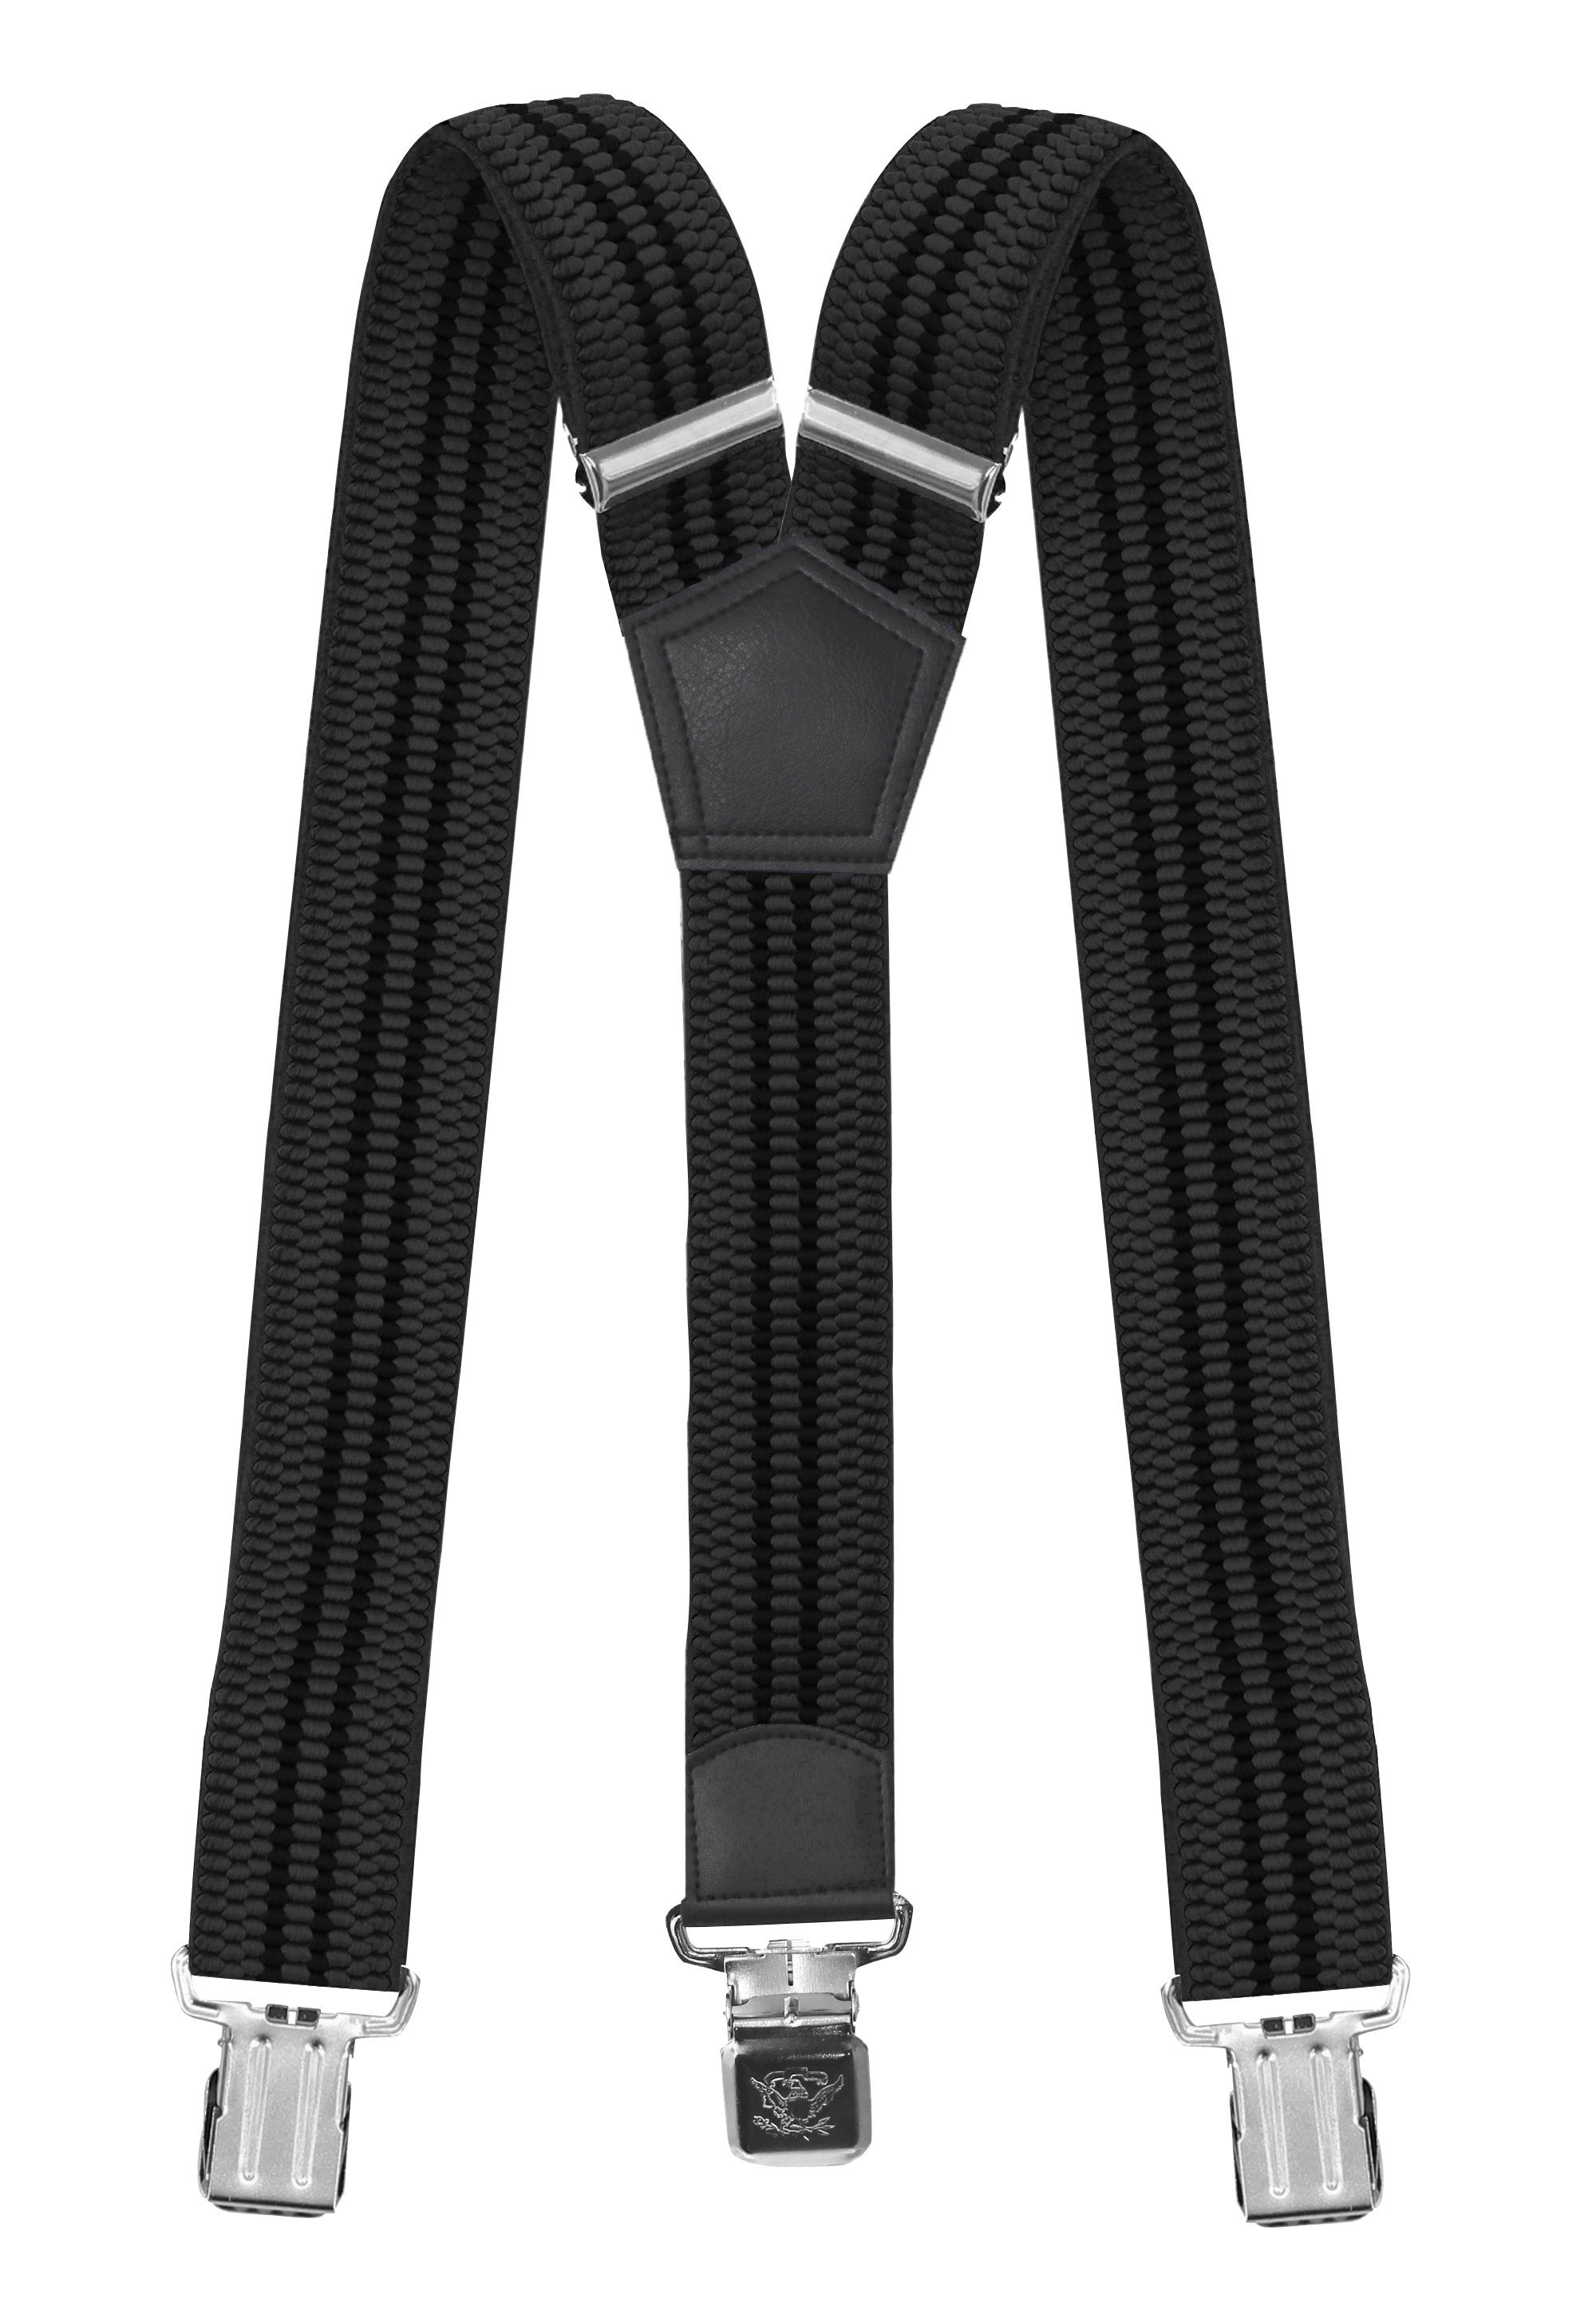 Fabio Farini Hosenträger 4cm Breites Y-Design verstellbar mit extra starken Clipverschluss, Grau (schwarze Streifen) Grau mit schwarzen Streifen